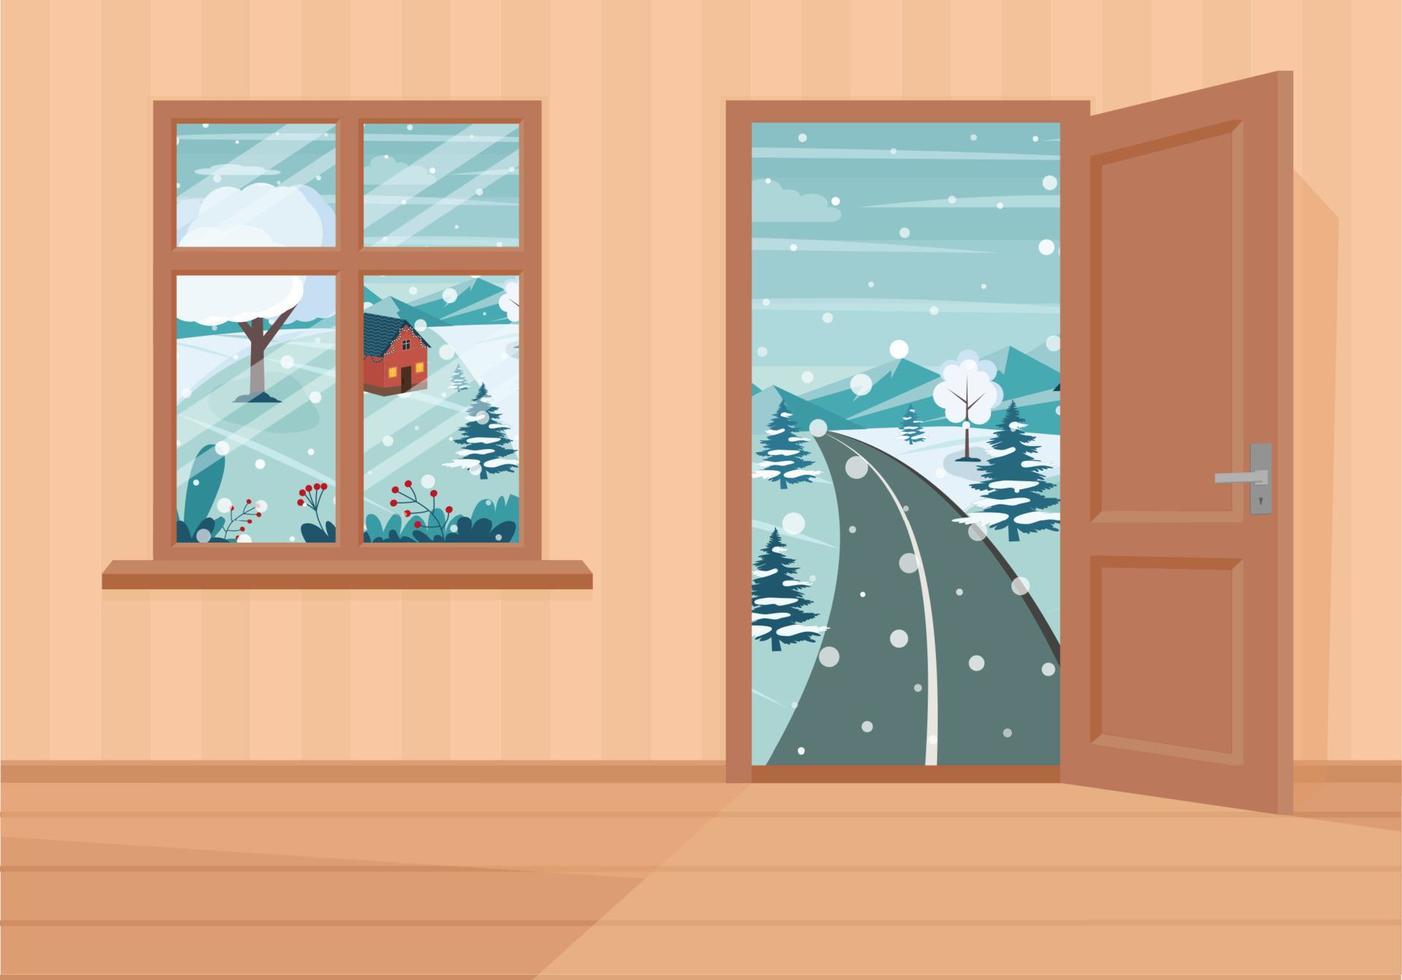 fenêtre et portes dans le paysage d'hiver. illustration vectorielle de style dessin animé plat. vecteur